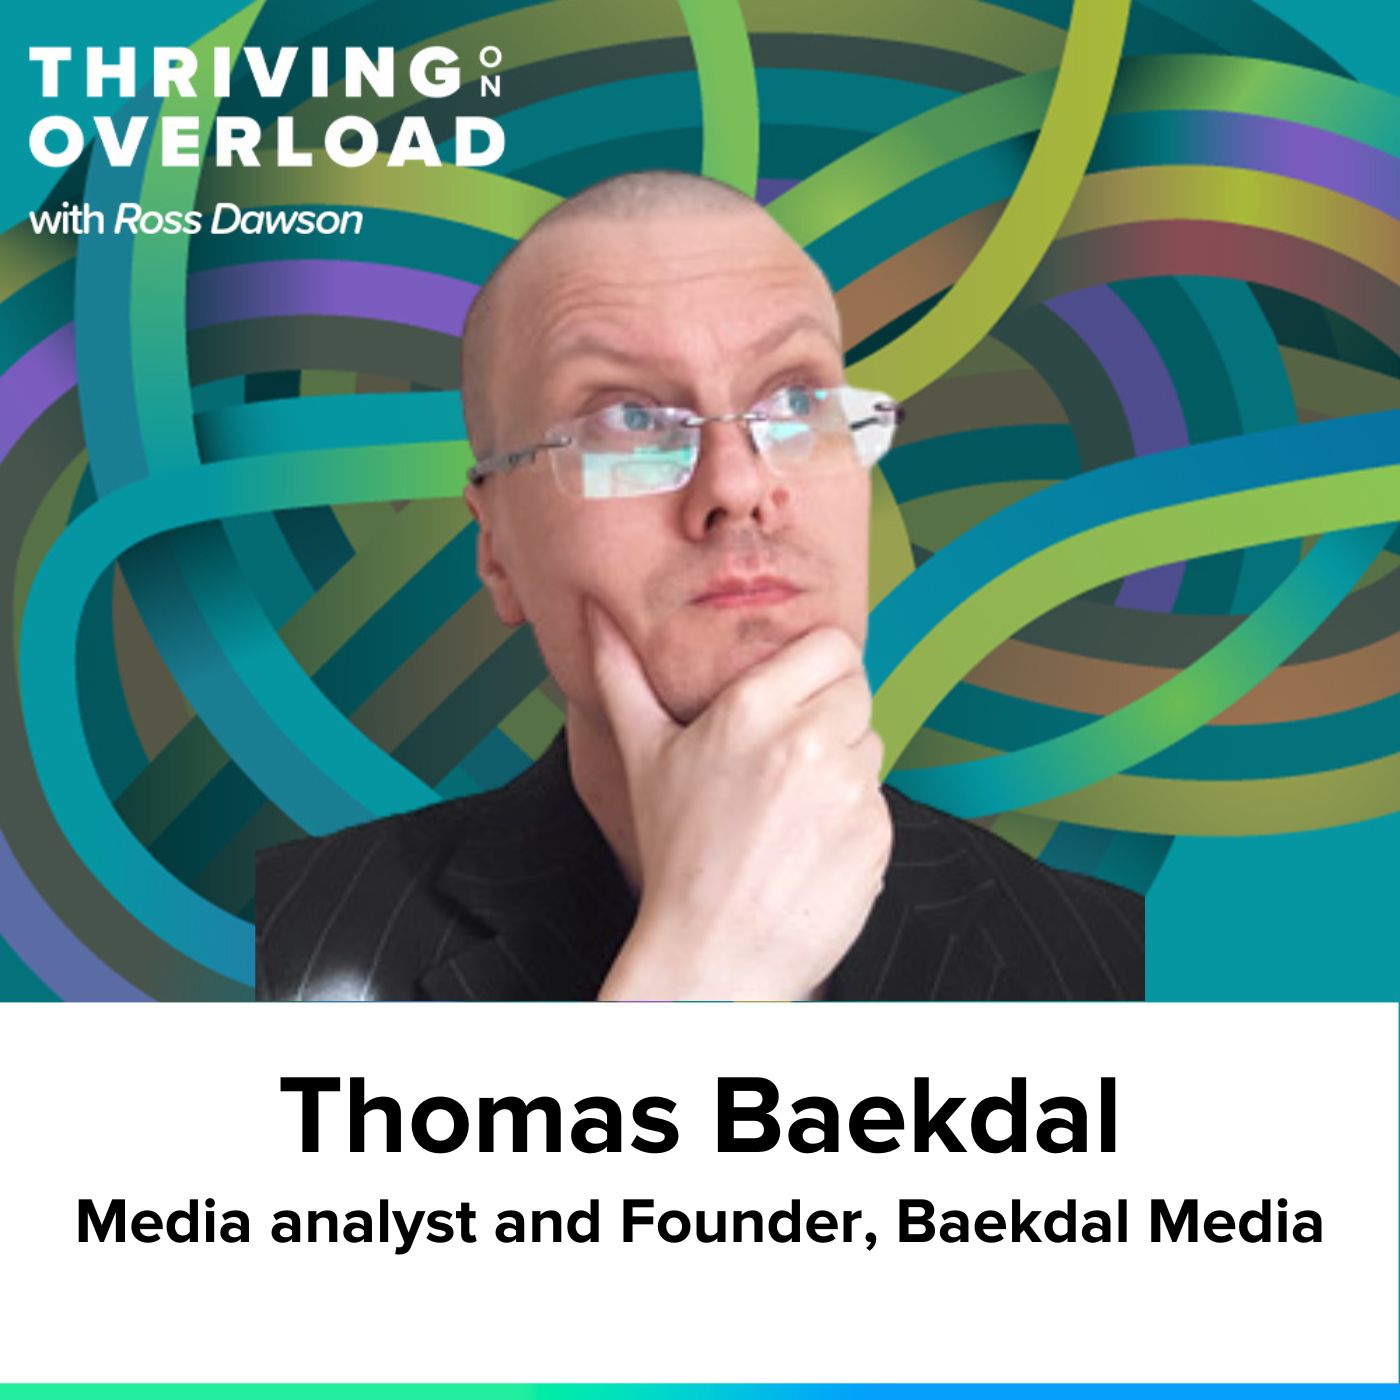 Thomas Baekdal